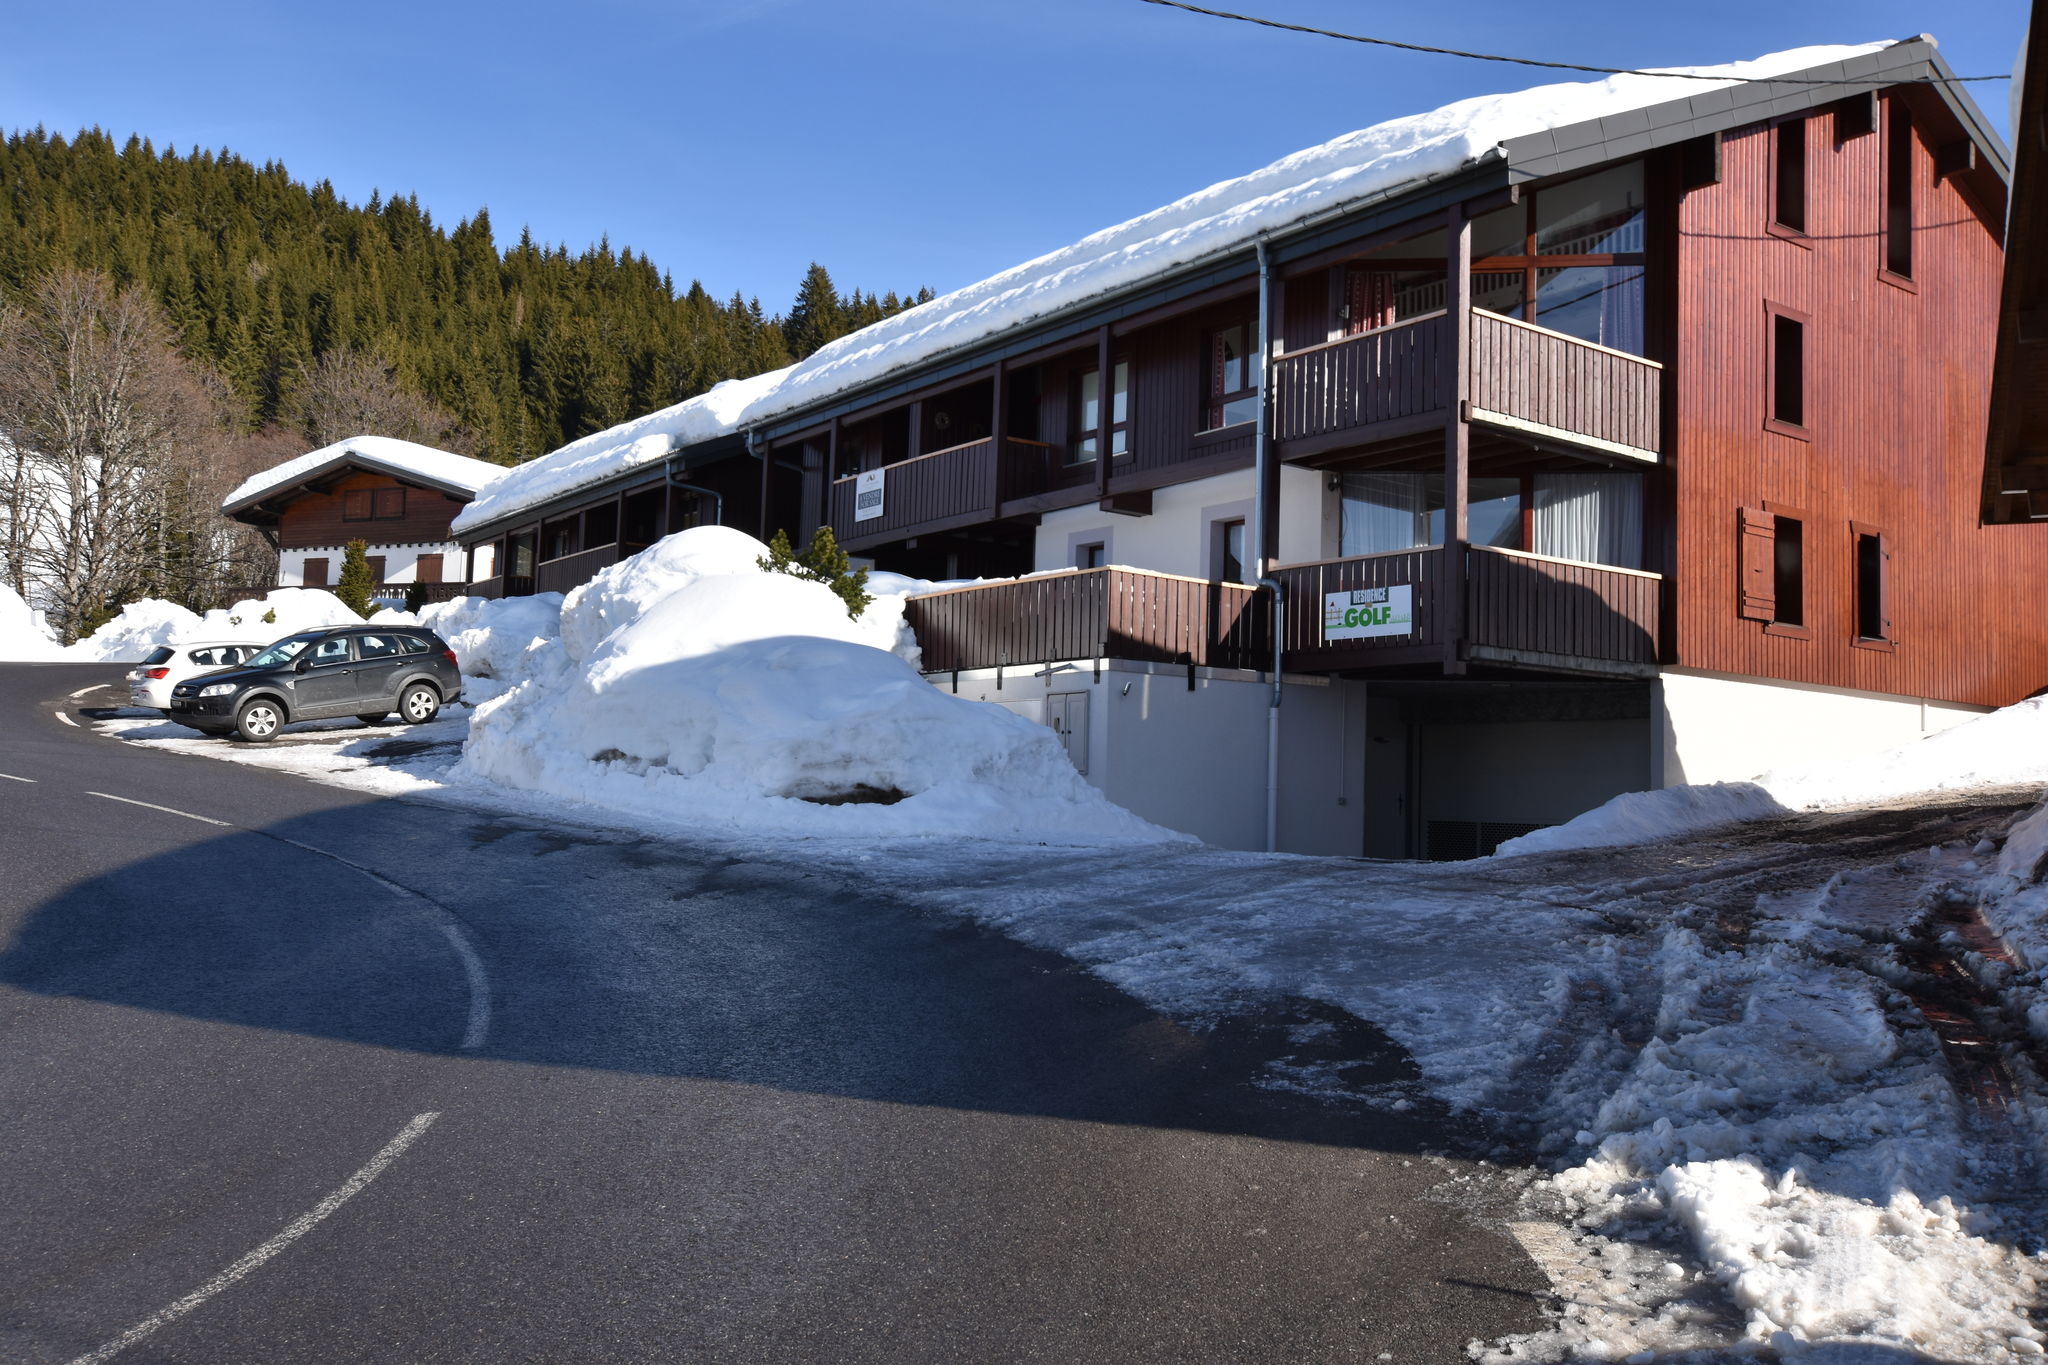 Komfortable Wohnung in Les Gets inmitten der franz. Alpen